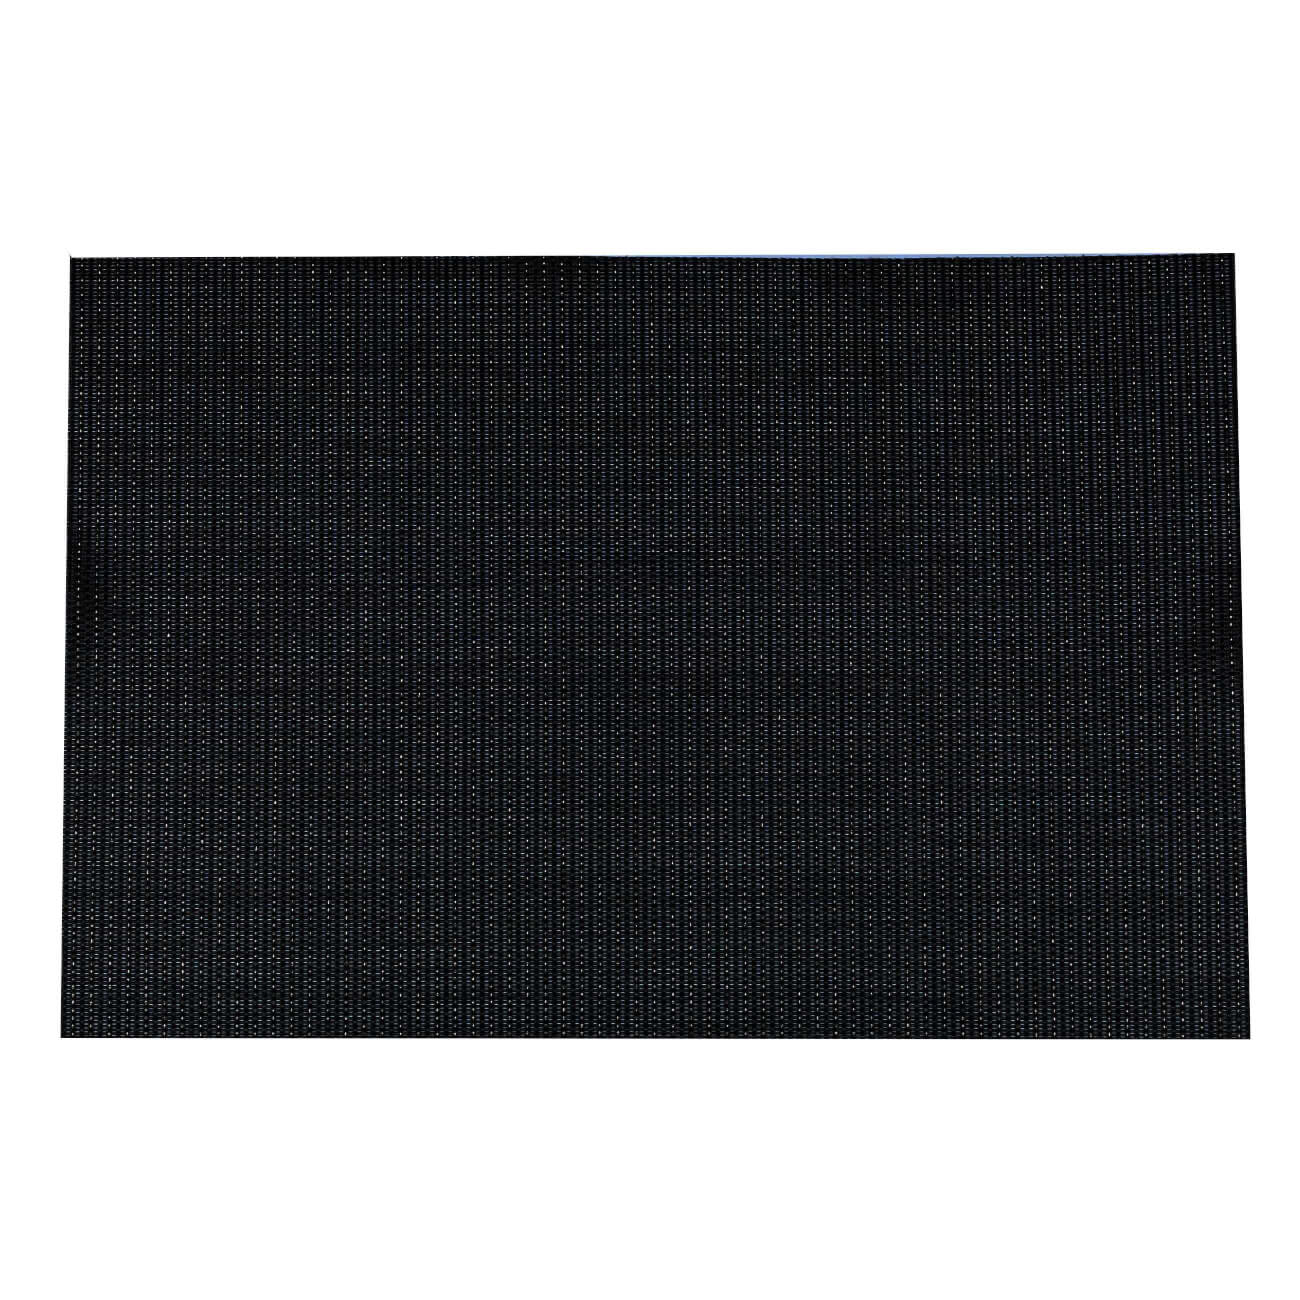 Салфетка под приборы, 30х45 см, ПВХ, прямоугольная, черная, Золотистая нить, Solid салфетка под приборы 38 см пвх круглая черная azhur grid